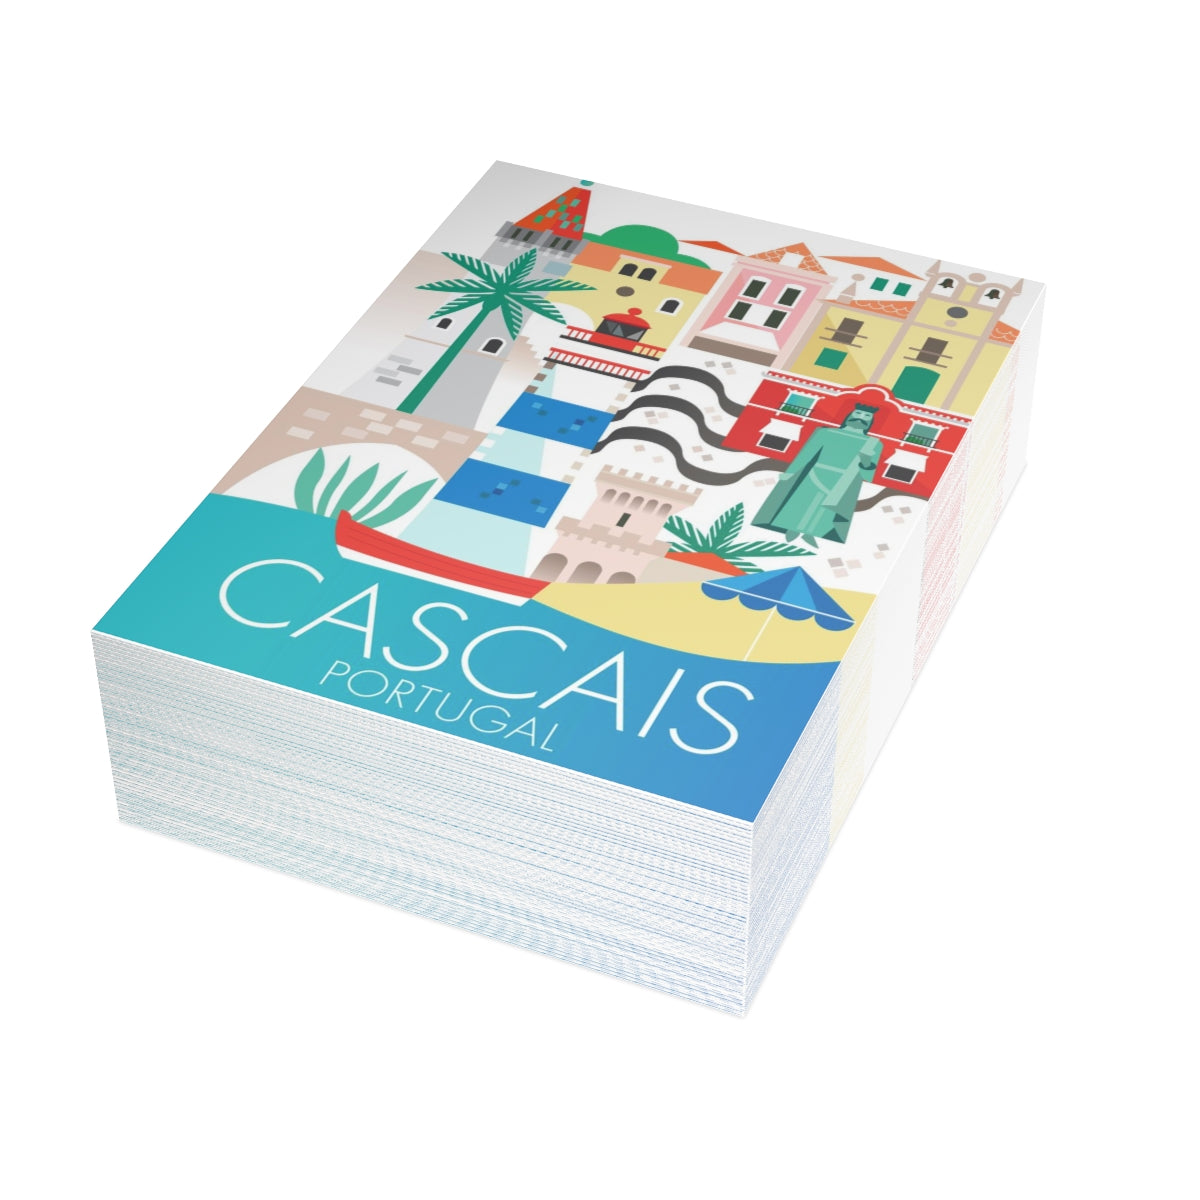 Cartes de correspondance mates pliées Cascais + enveloppes (10 pièces) 